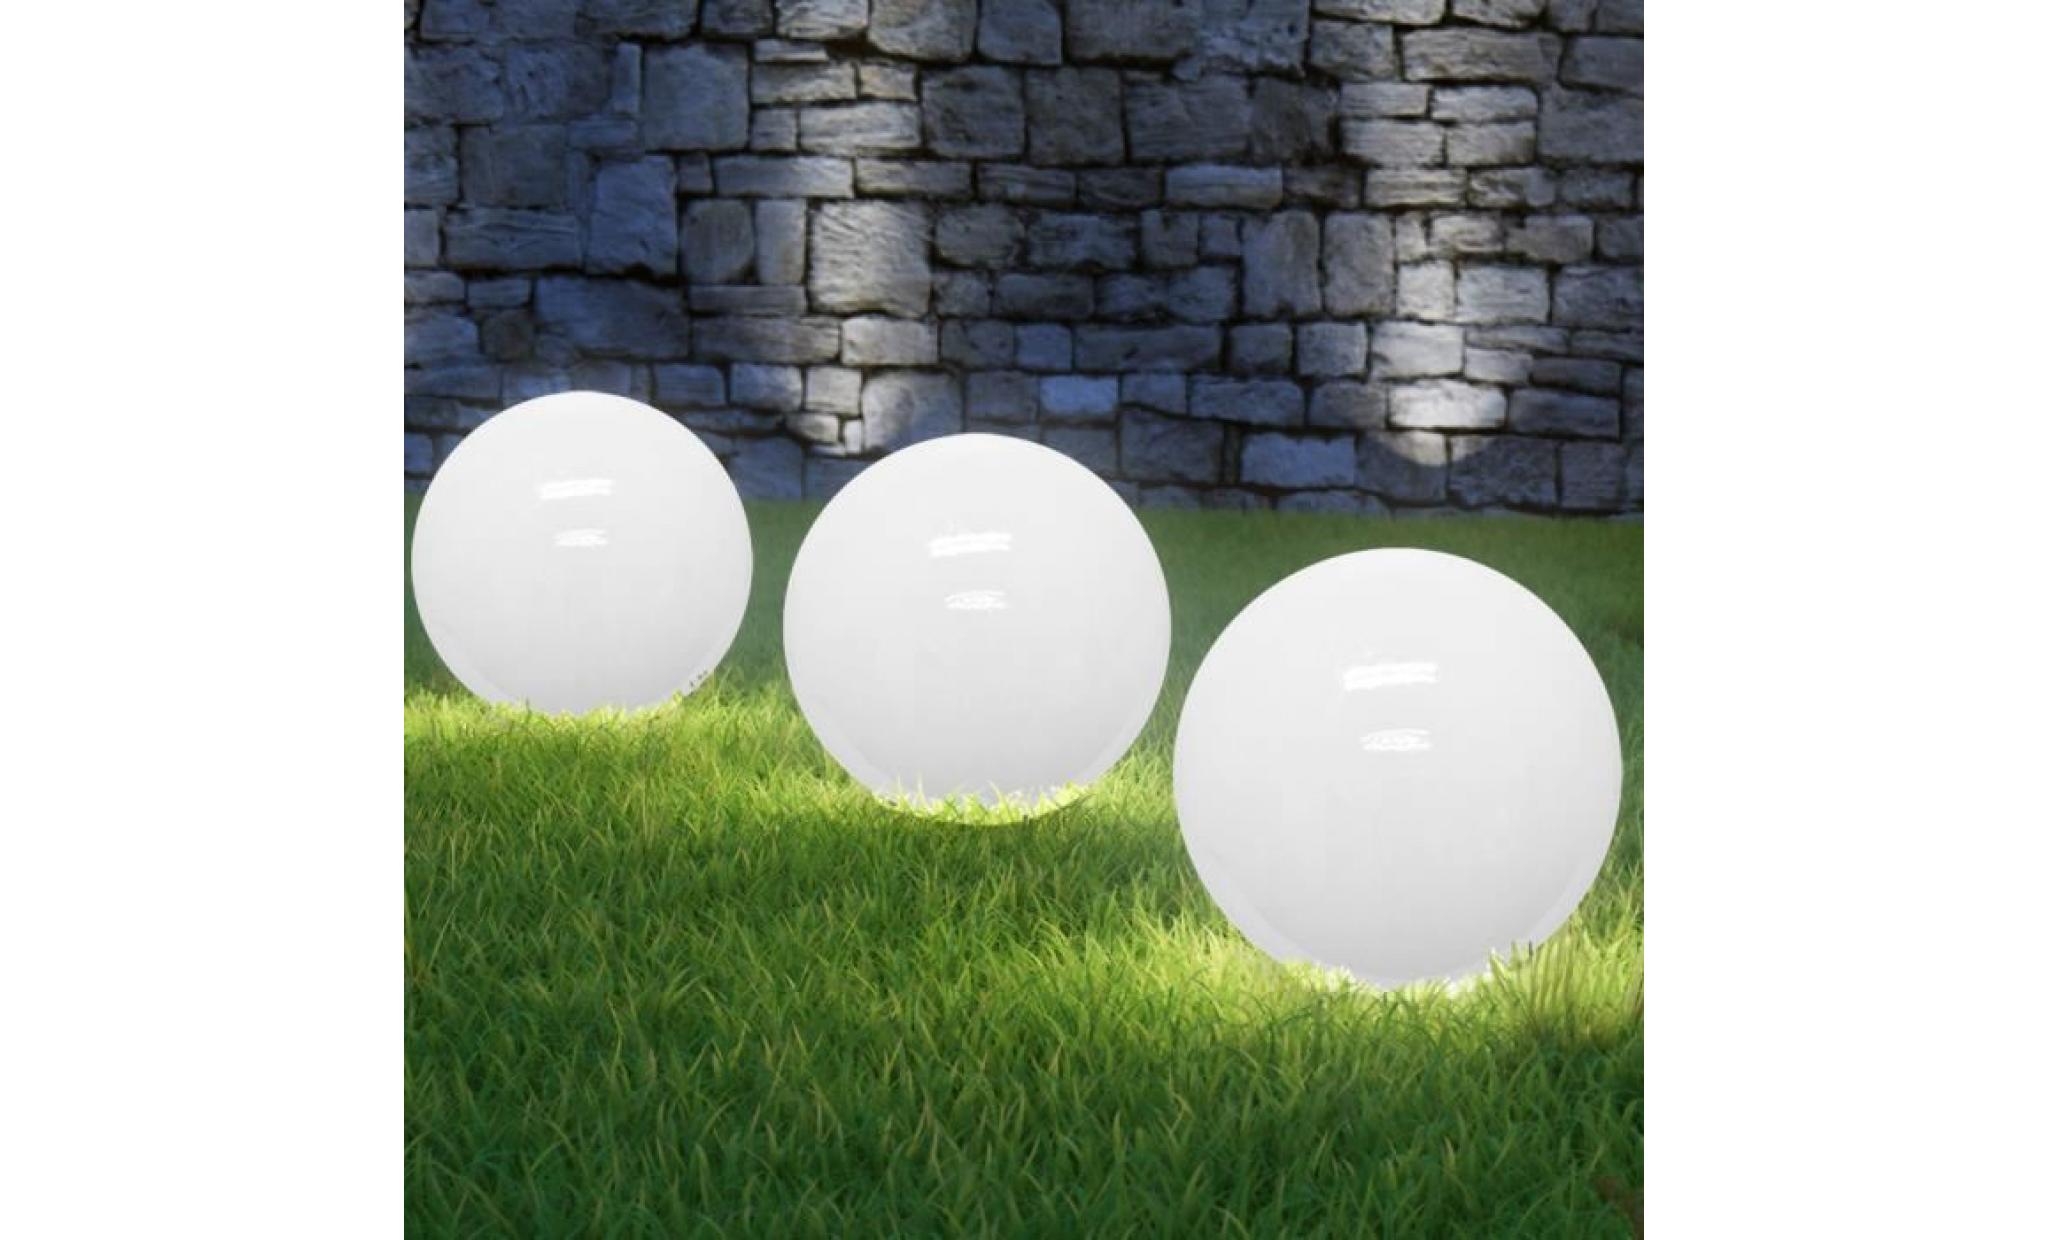 deuba | lampe solaire led • blanc opale • Ø 20cm | ecologique, économique, extérieur, boule, sphère lumineuse pas cher